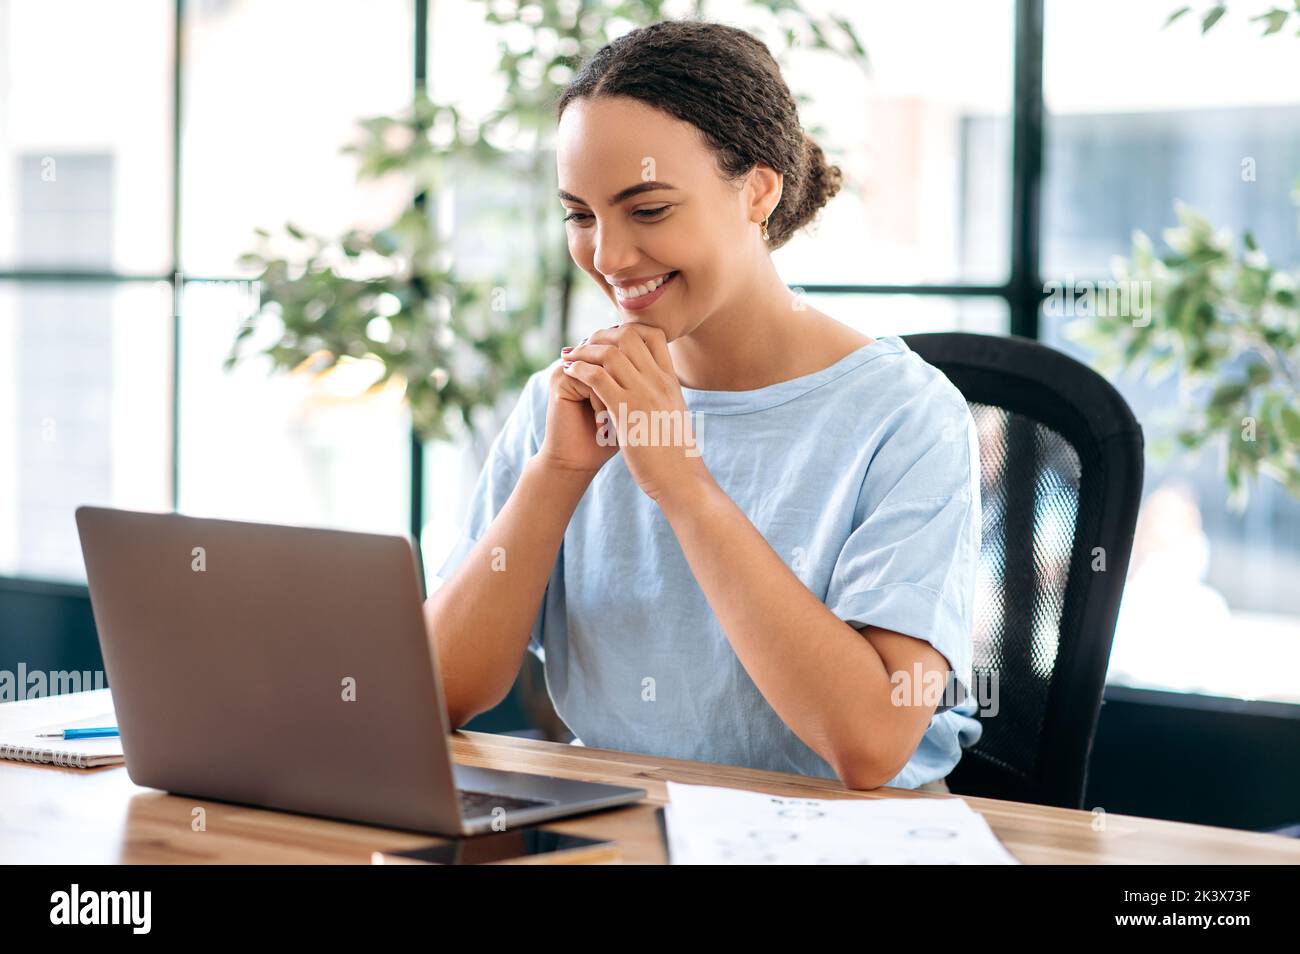 Erfolgreiche selbstbewusste schöne brasilianische oder latino Geschäftsfrau, Büroangestellte, Kreativmanagerin, sitzt am Arbeitsplatz im modernen Büro, schaut auf Laptop, liest gute Nachrichten, lächelt glücklich Stockfoto